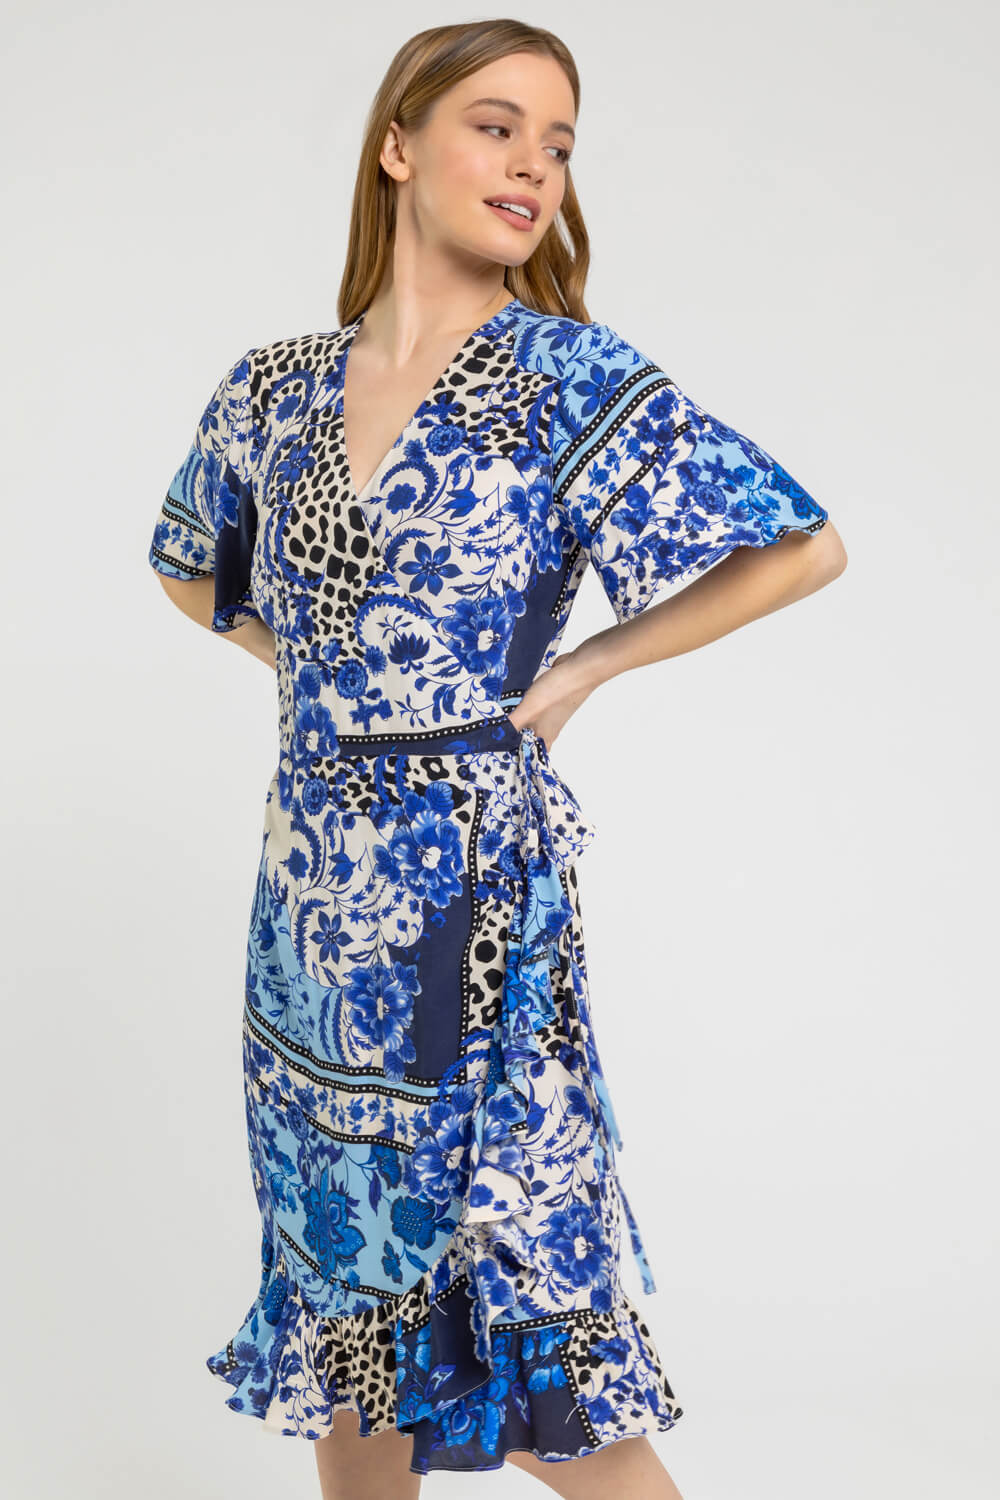 Blue Petite Floral Contrast Print Wrap Dress, Image 5 of 5